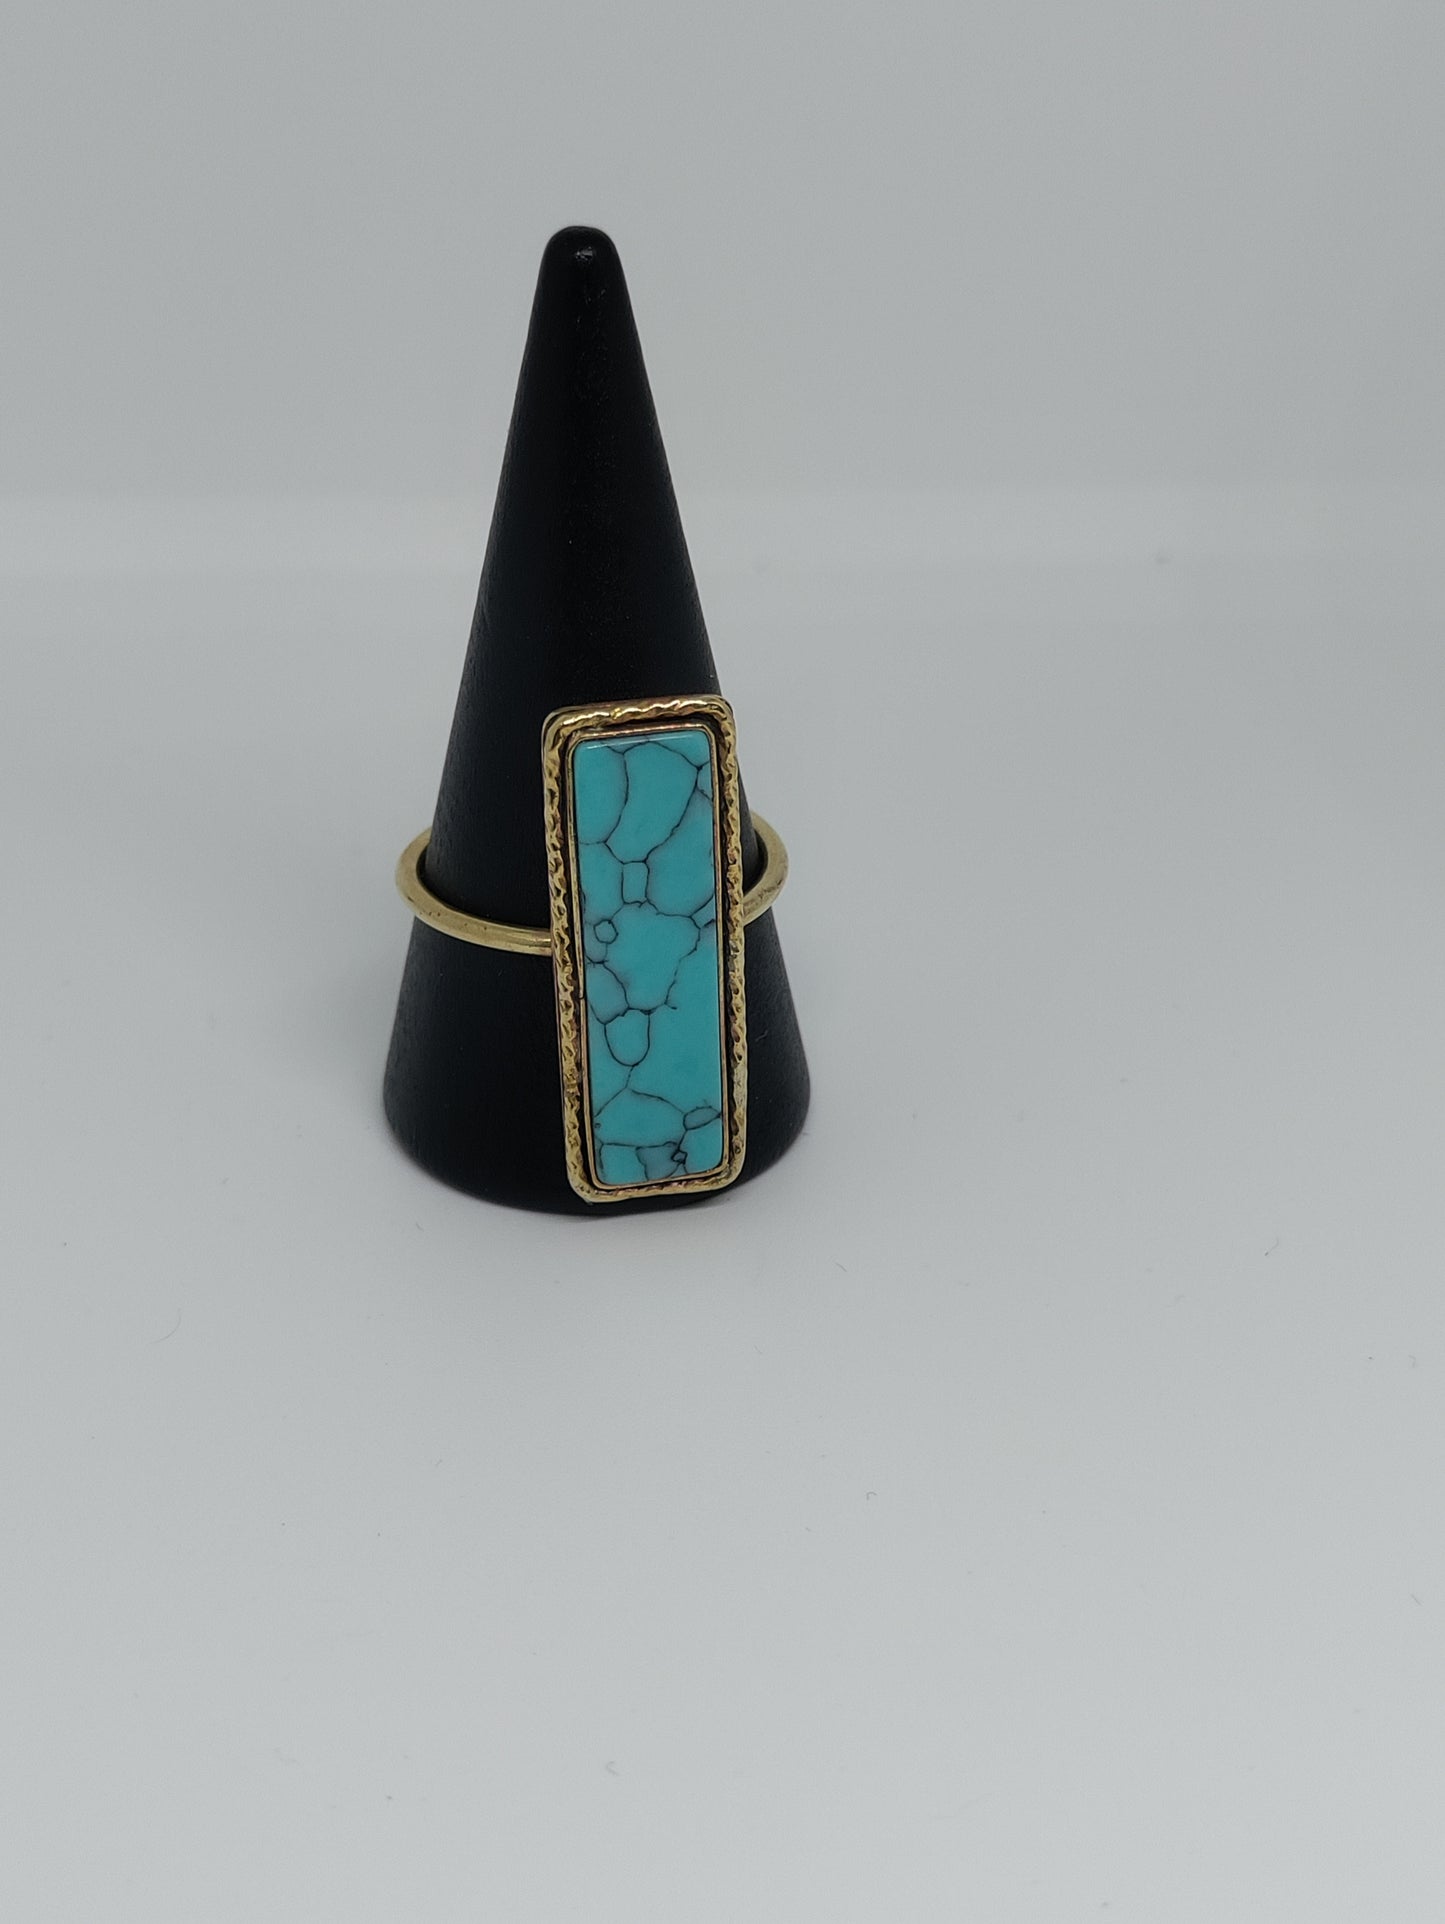 Prototype jewelry by LEIA&CO